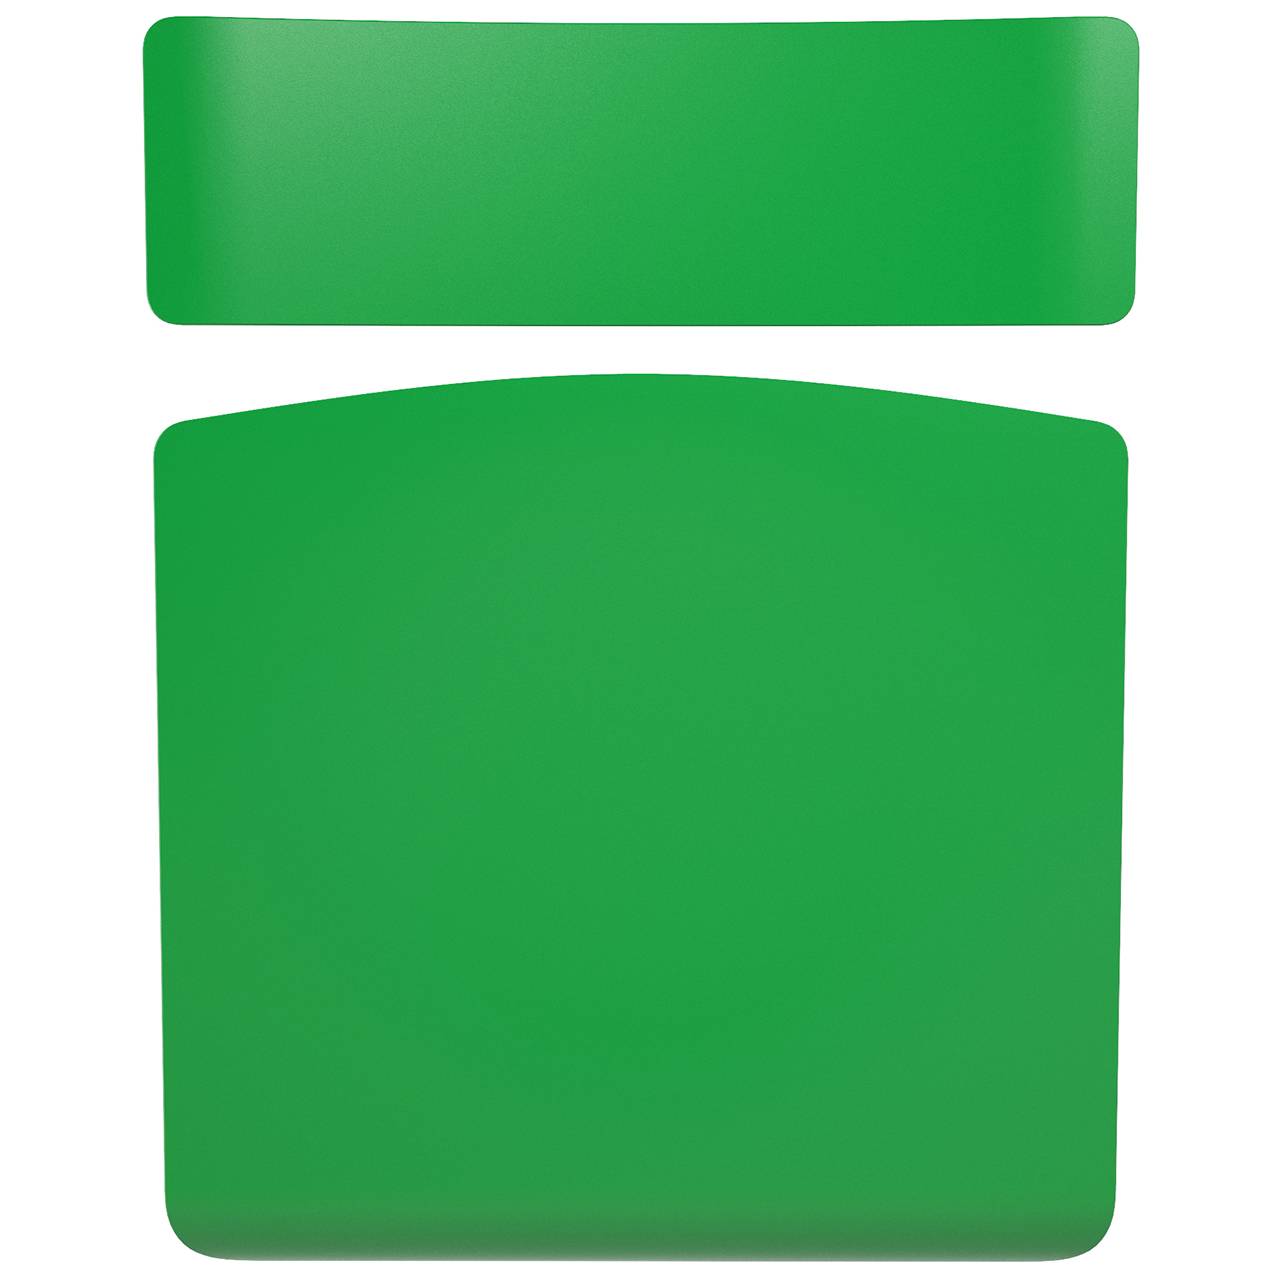 Стул ученический регулируемый (гр. 2-4, 3-5, 4-6 или 5-7) серый Зеленый 2-4 прямоугольная